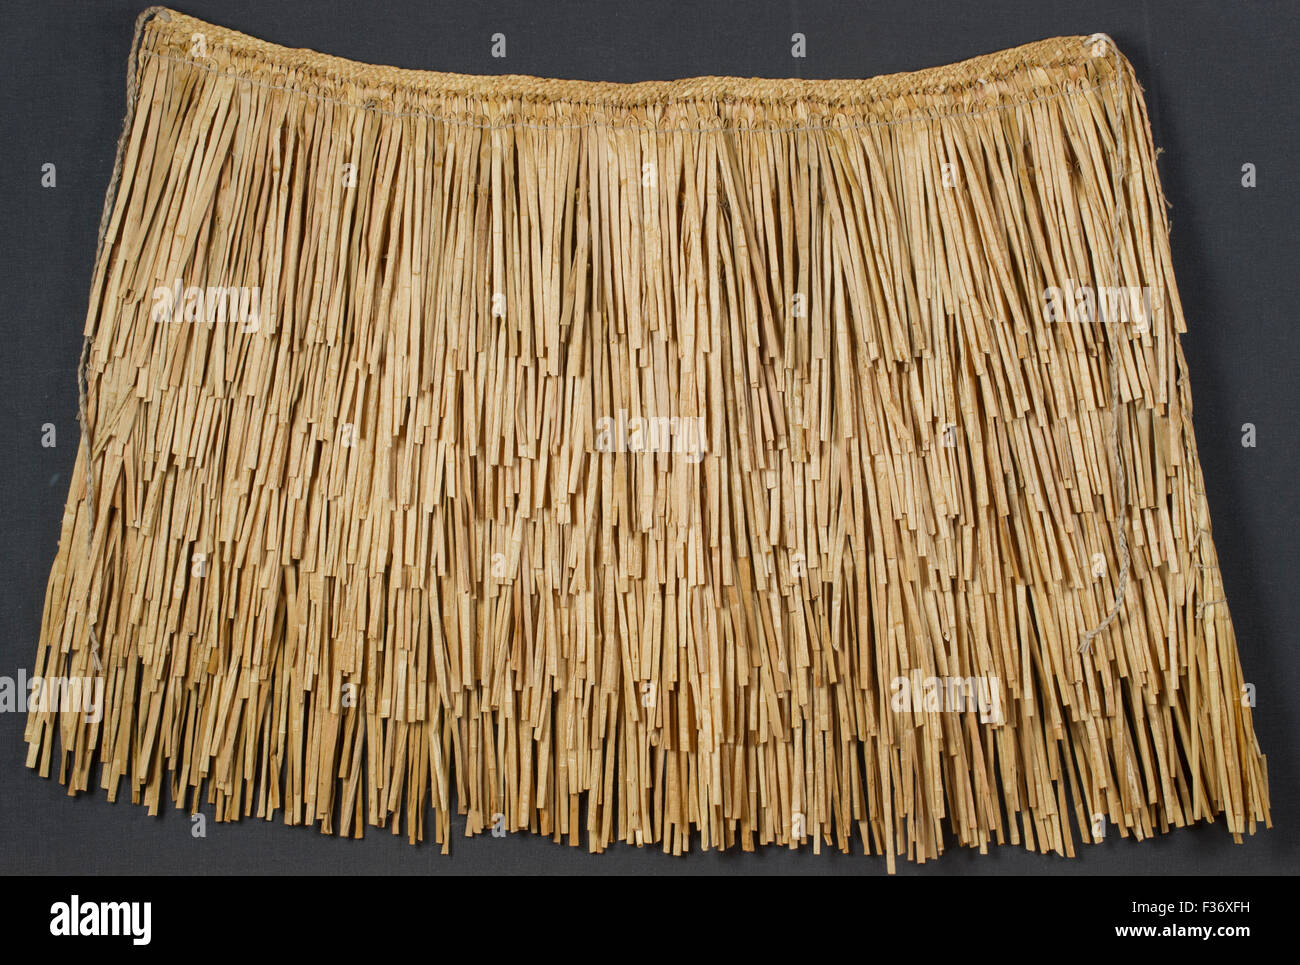 Jupe lin tissé porté par les Maoris, peuple indigène de la Nouvelle-Zélande Banque D'Images